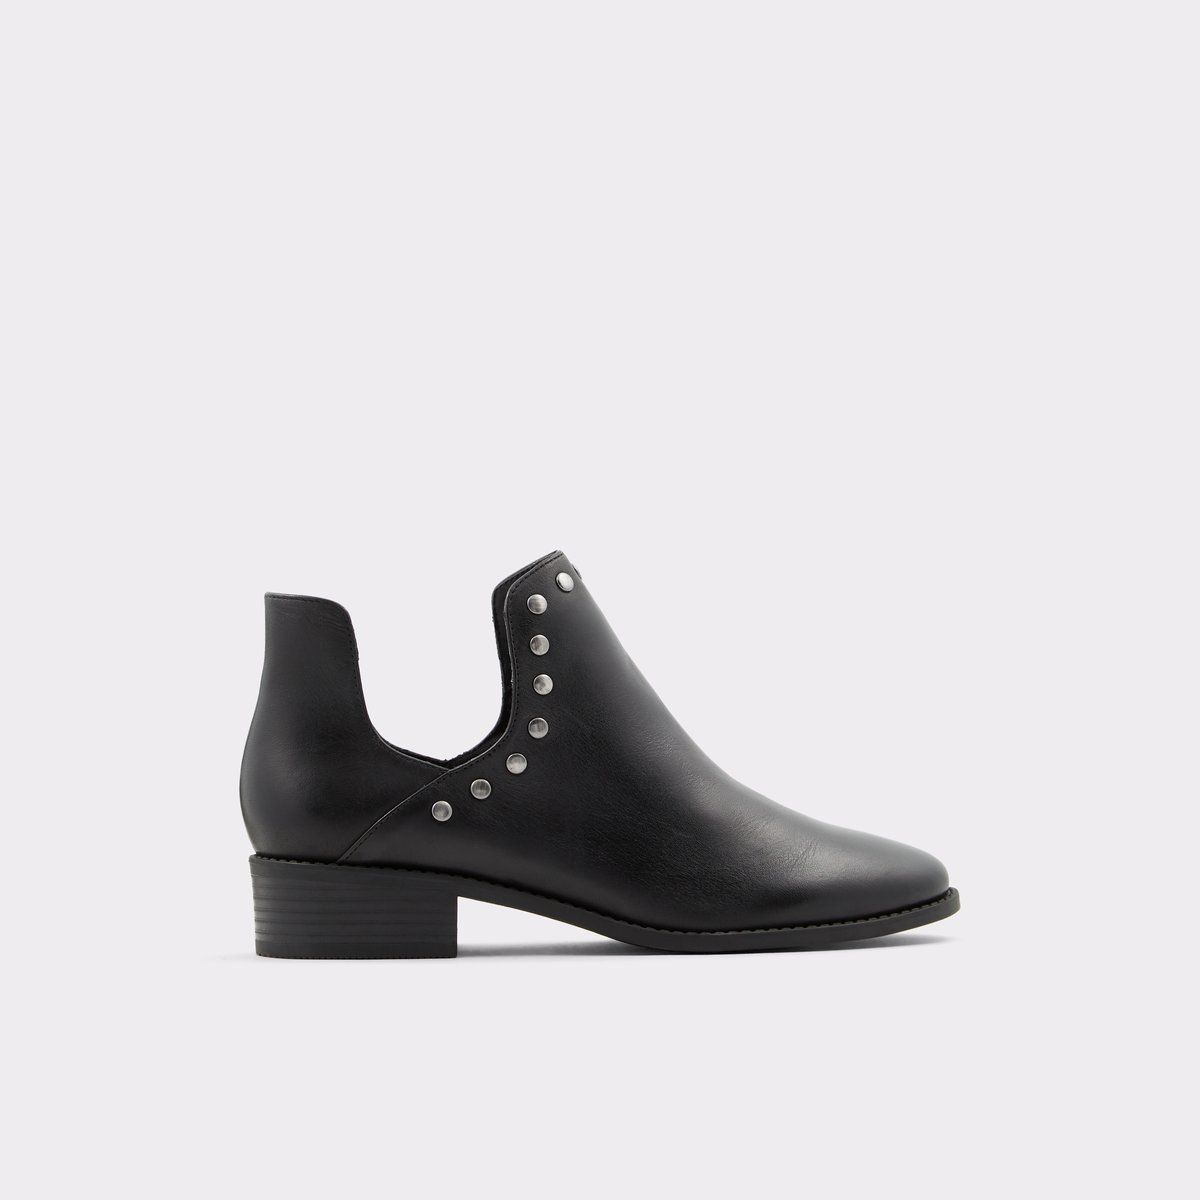 Merira Black Women's Boots | Aldoshoes.com US | Aldo Shoes (US)